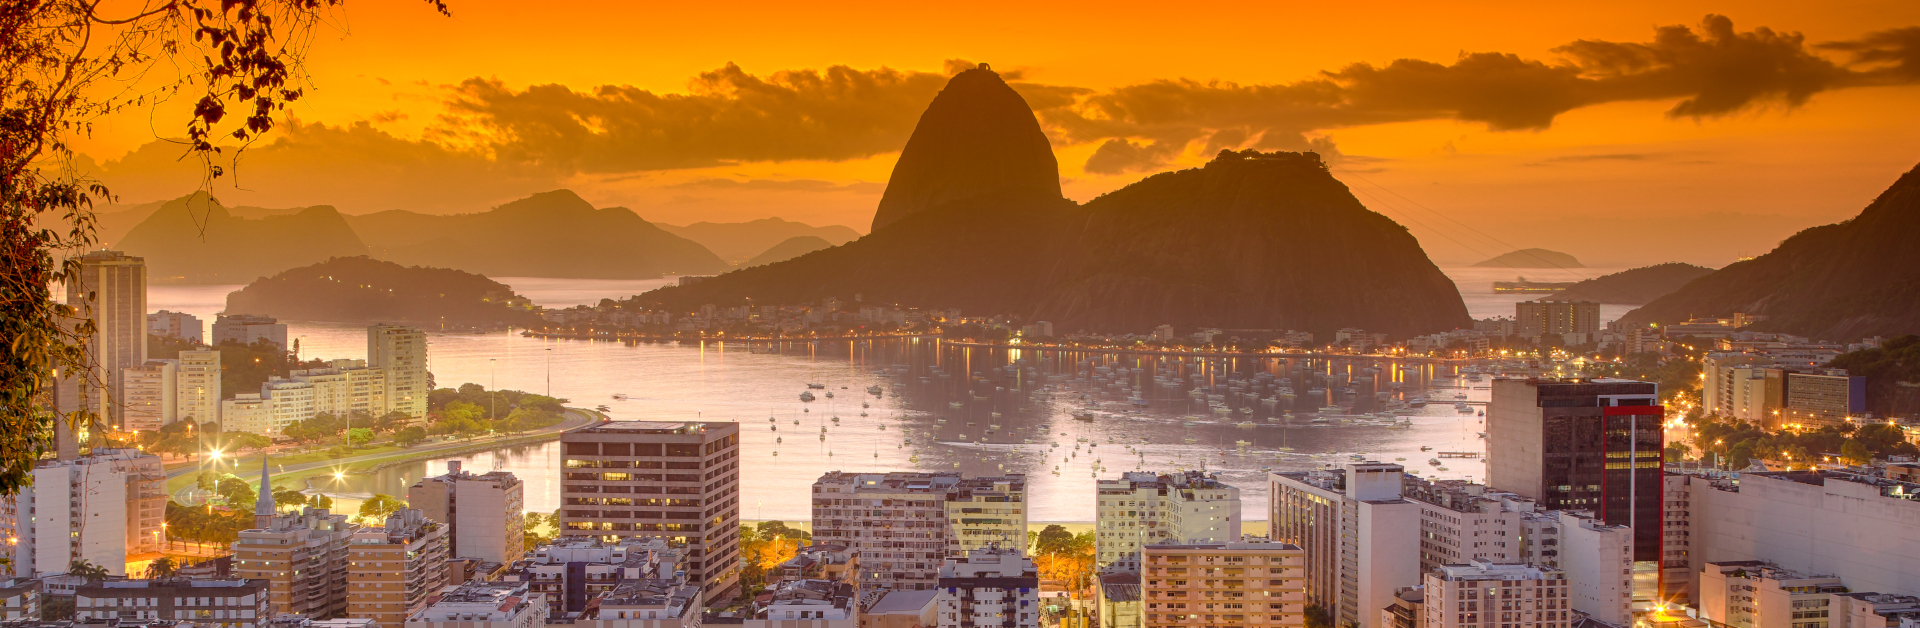 Imóveis em leilão no Rio de Janeiro